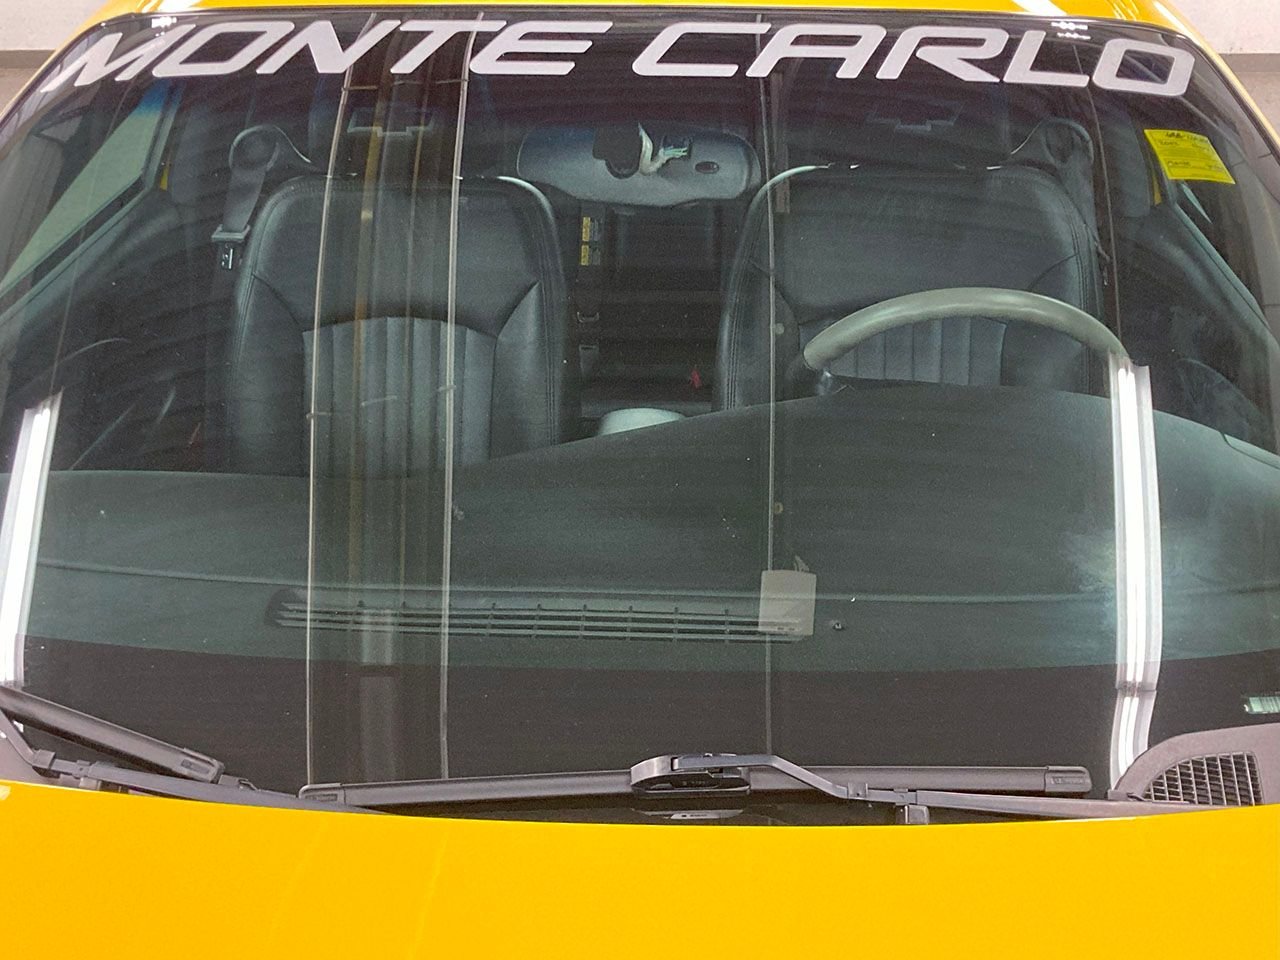 For Sale 2002 Chevrolet Monte Carlo